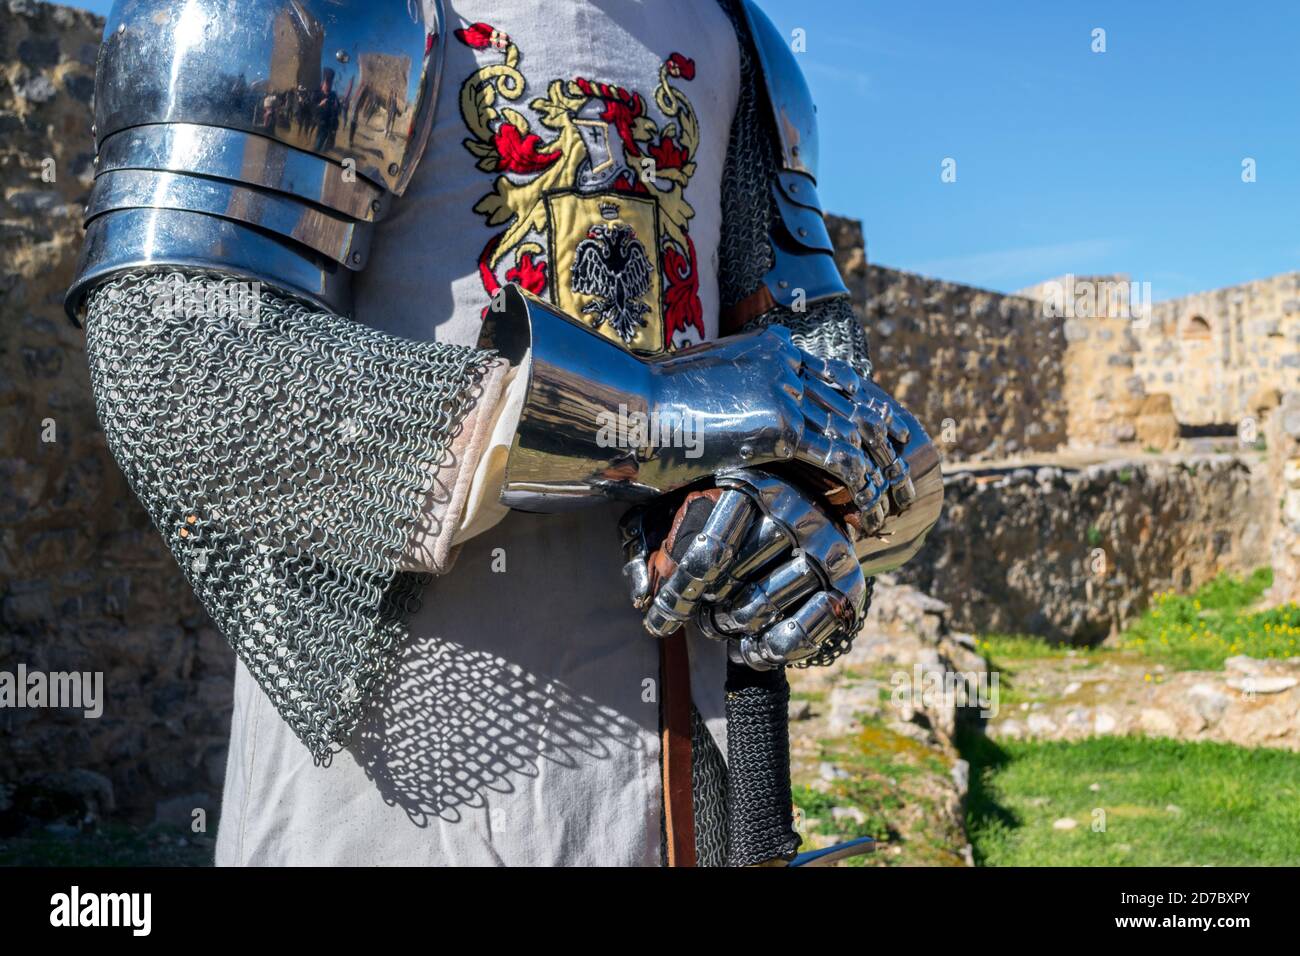 VIDEO. En cotte de maille et armure médiévale, une cinquantaine de  chevaliers se combattent en duel pour remporter le Lion d'Acier